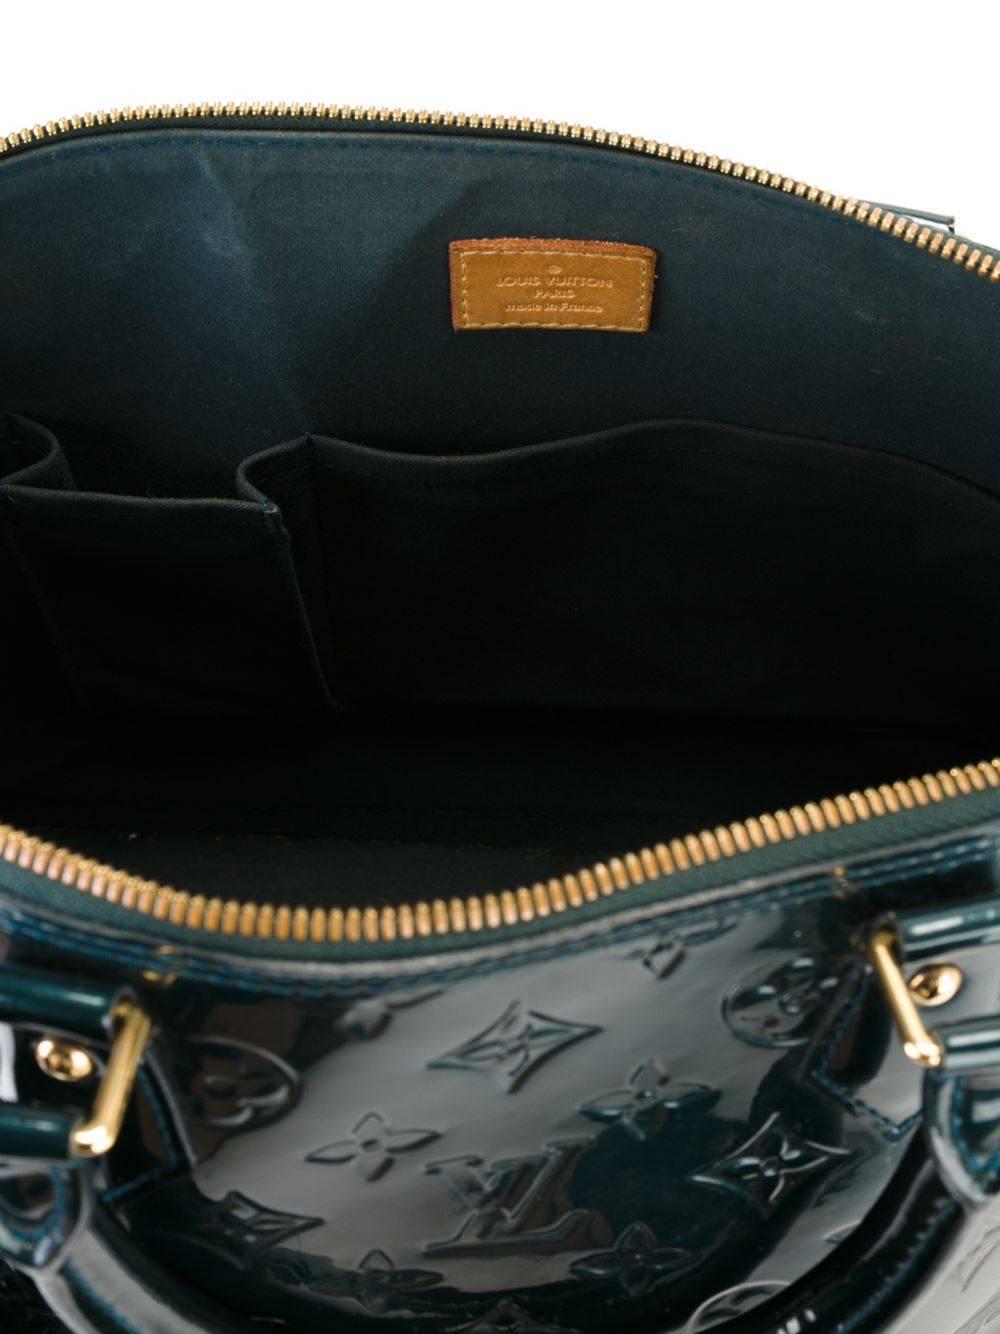 patent leather louis vuitton bag